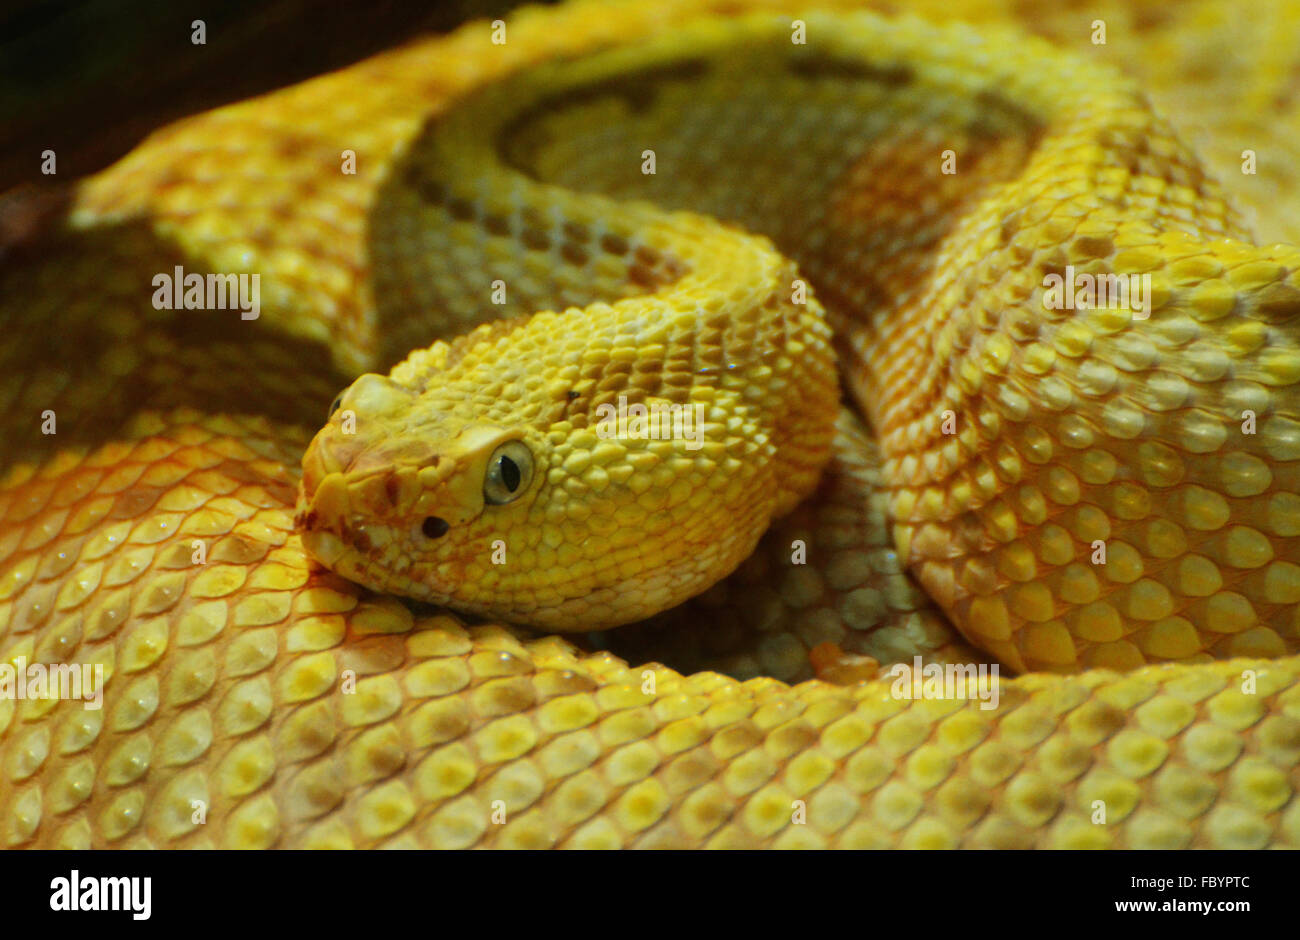 Un serpent jaune enroulé Banque D'Images